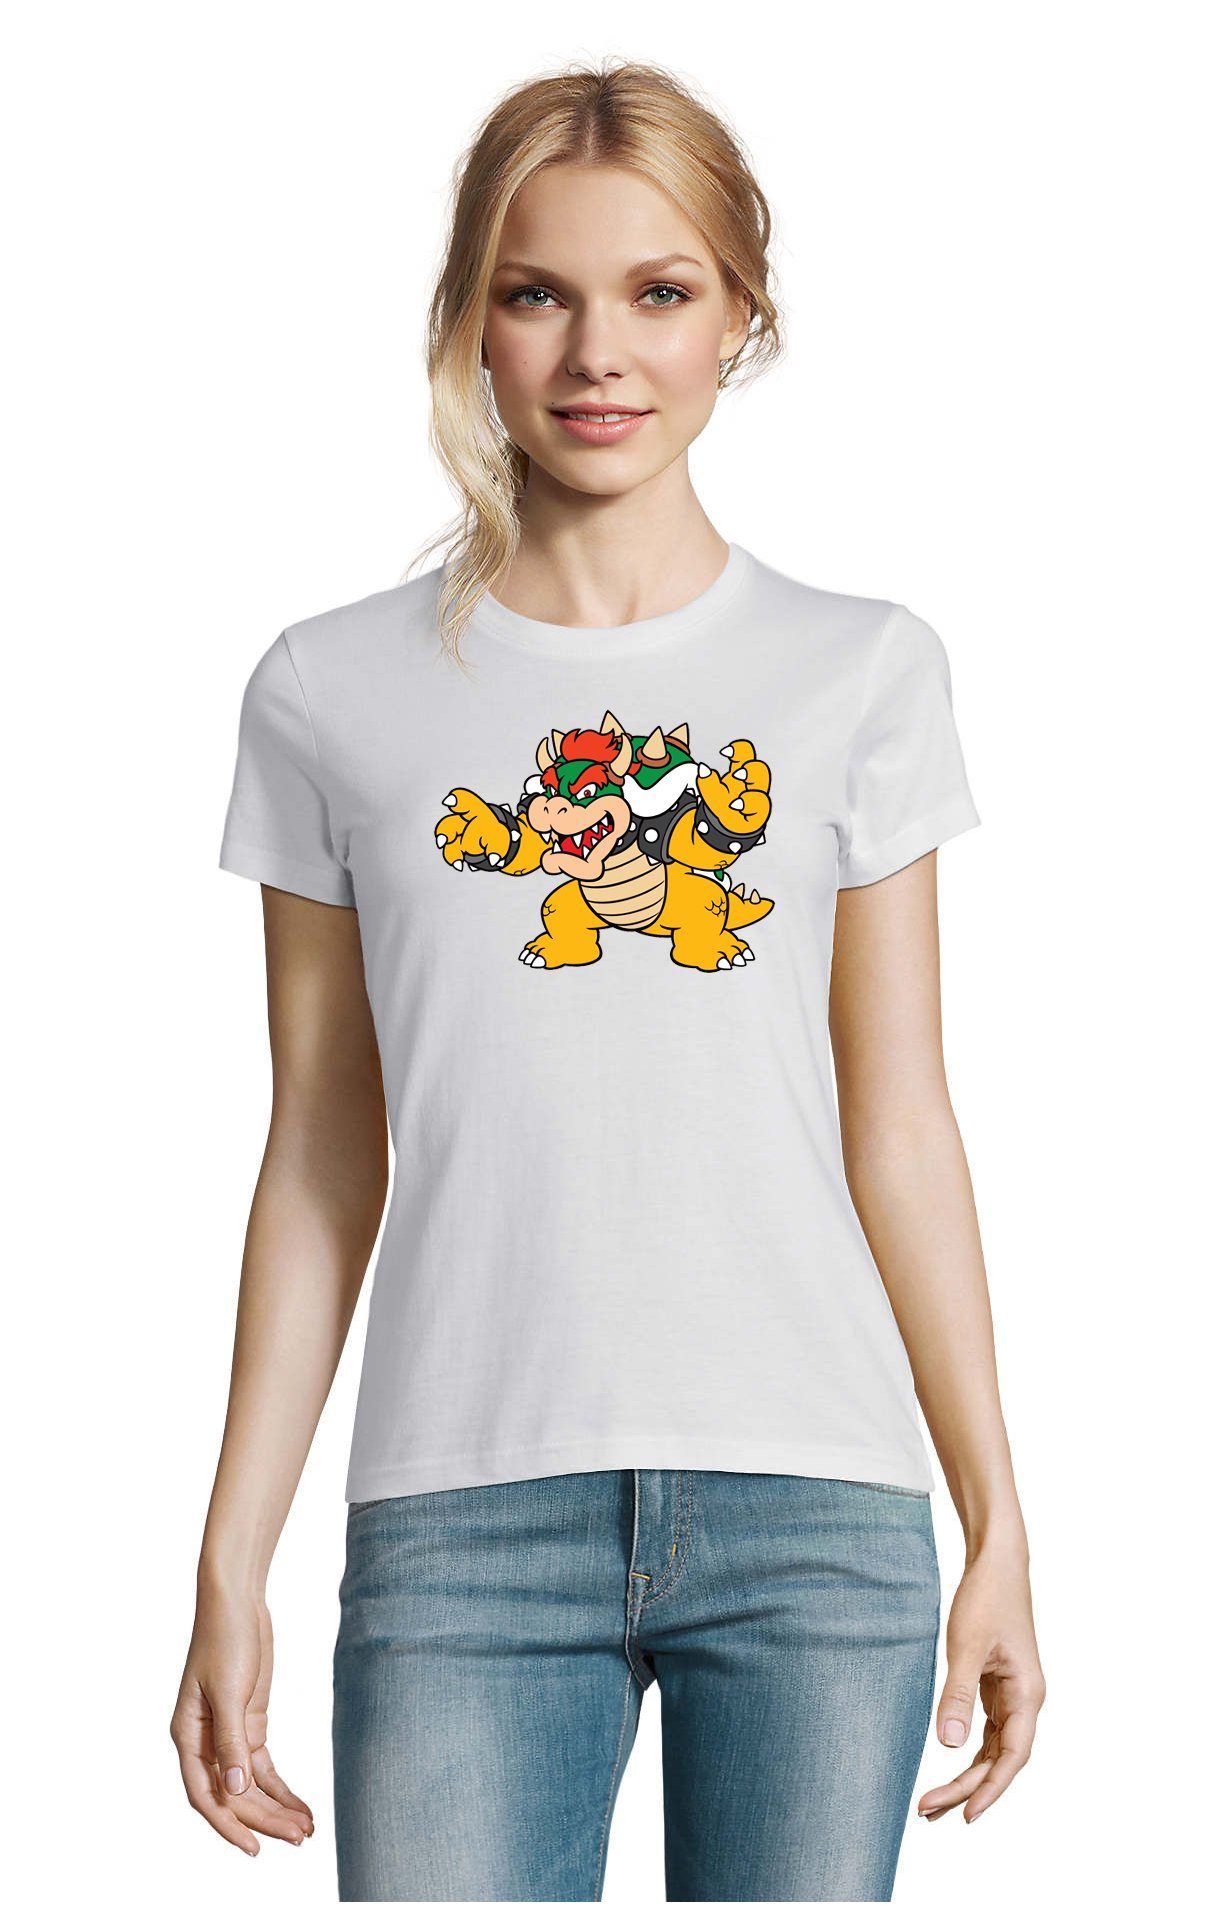 Blondie & Brownie T-Shirt Damen Bowser Nintendo Mario Yoshi Luigi Game Gamer Gaming Konsole Weiss